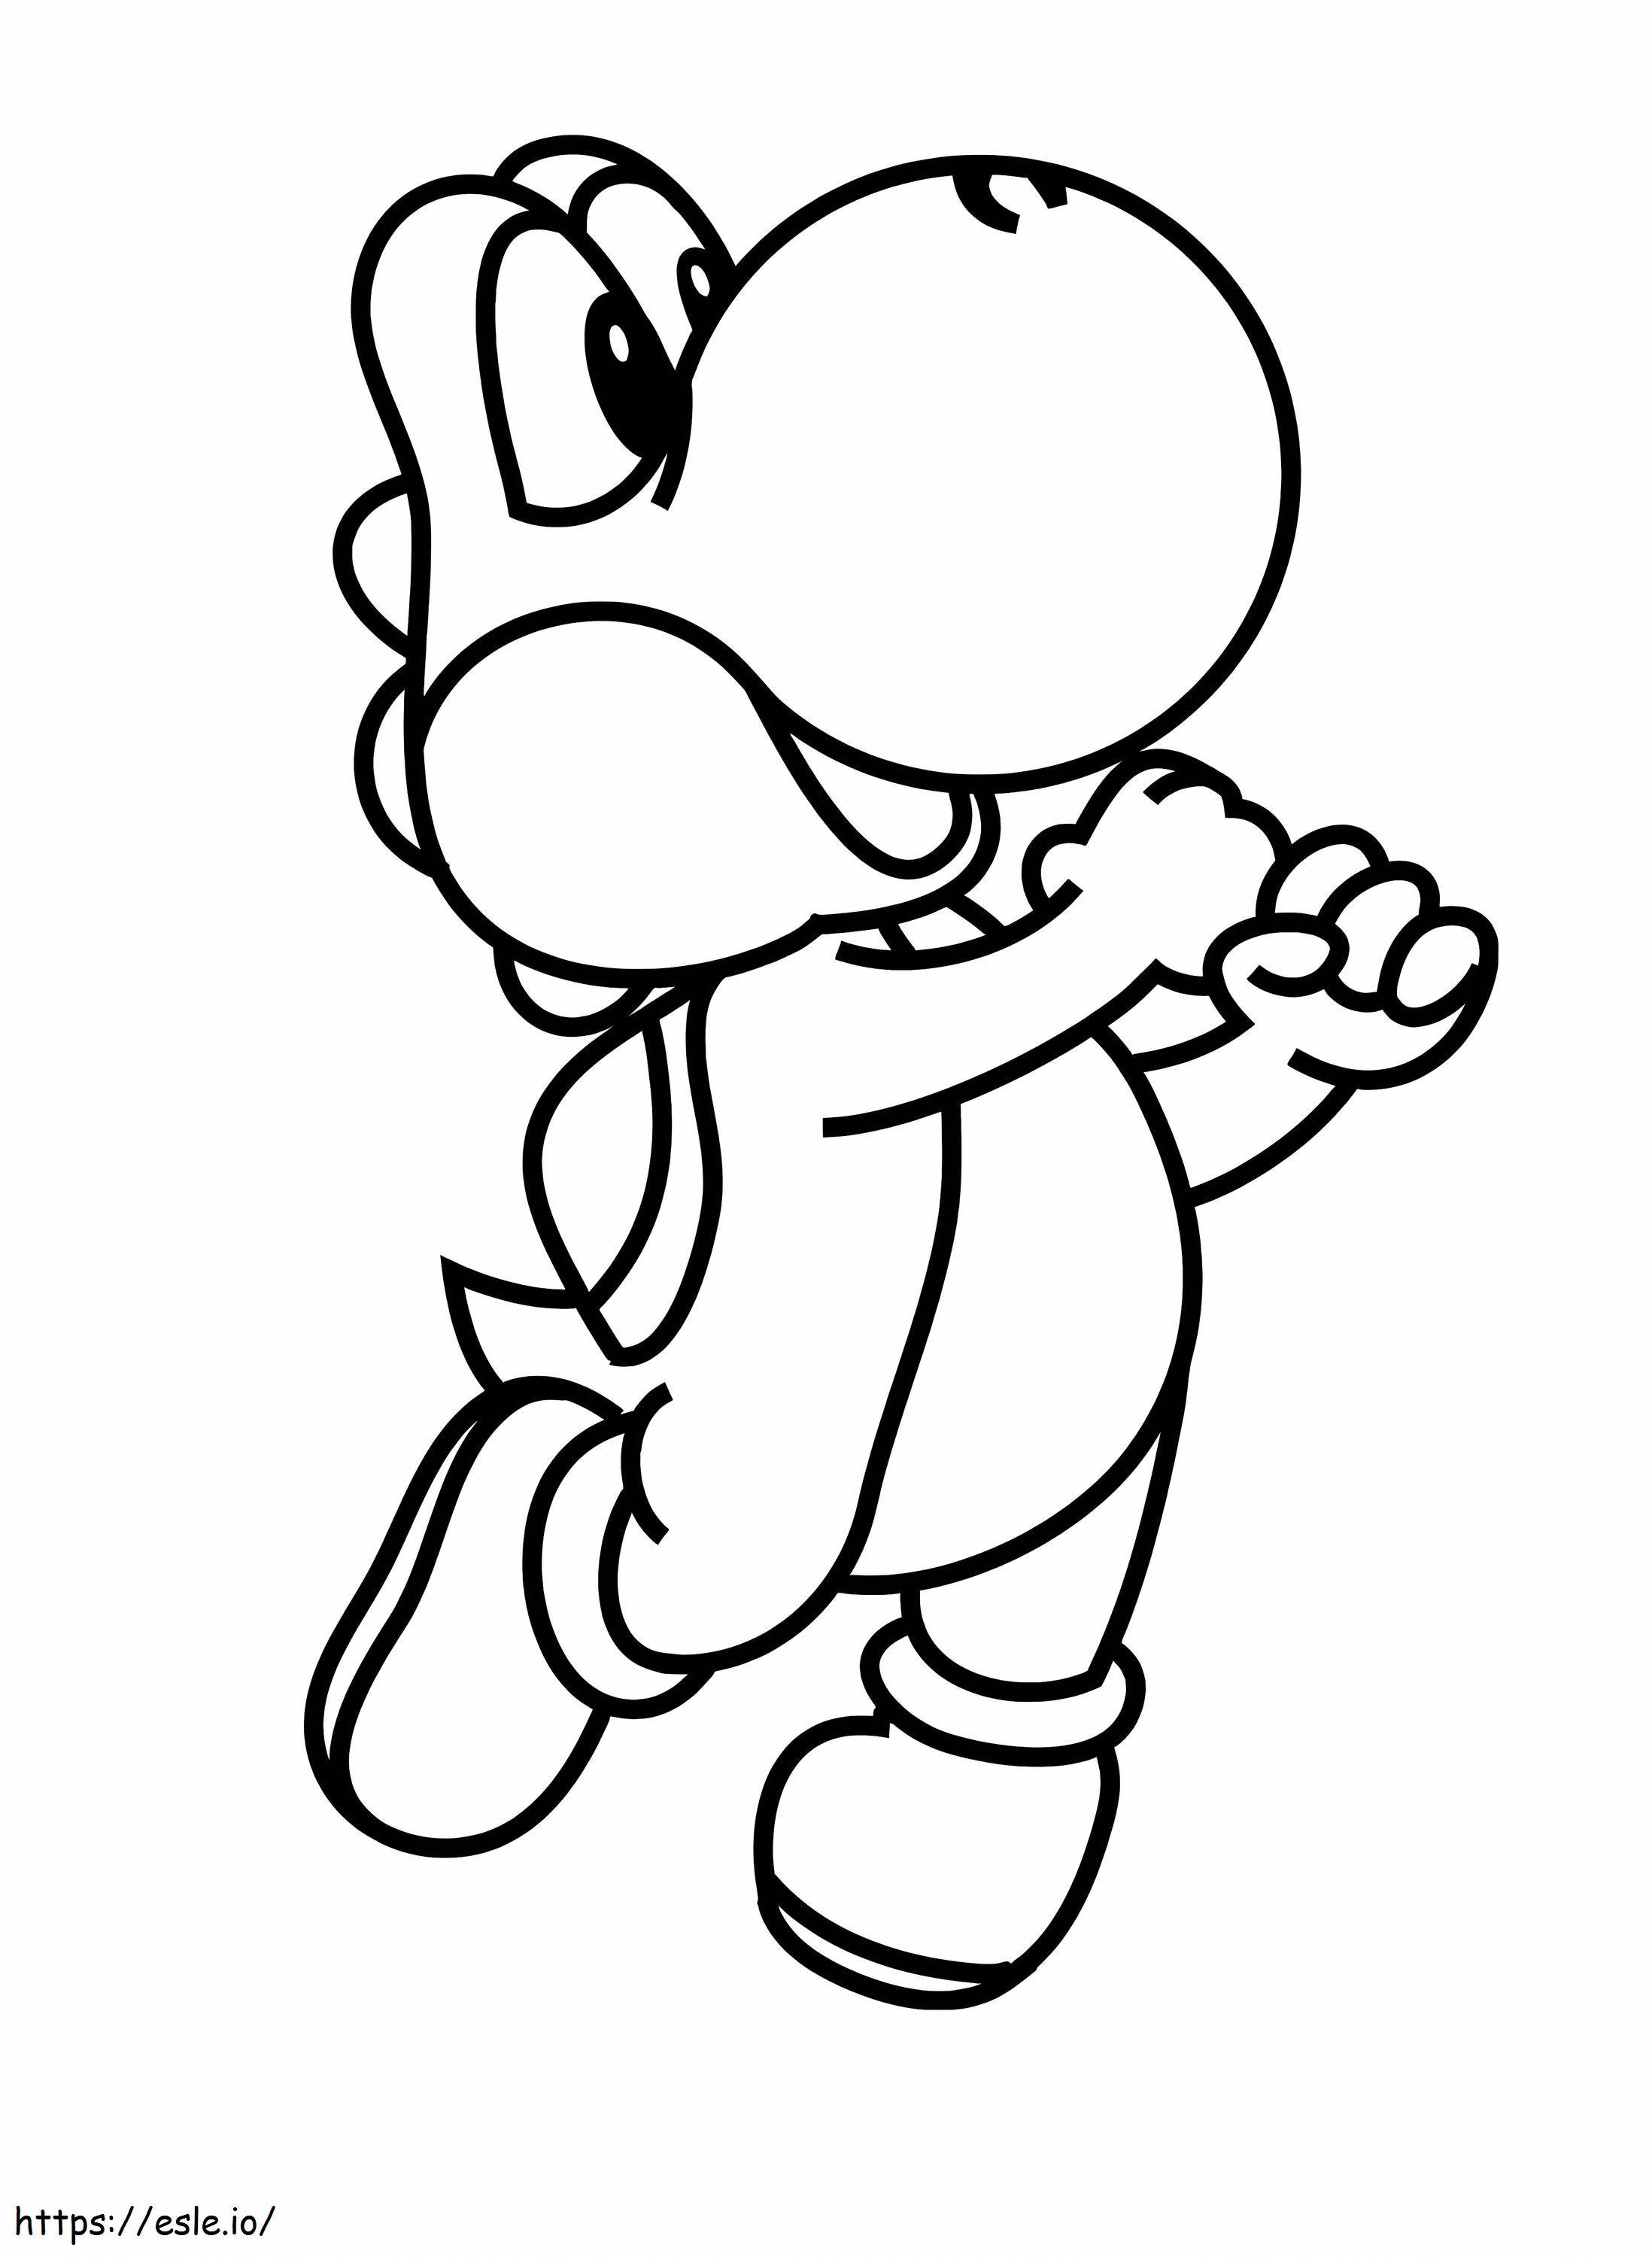 Yoshi De Mario coloring page